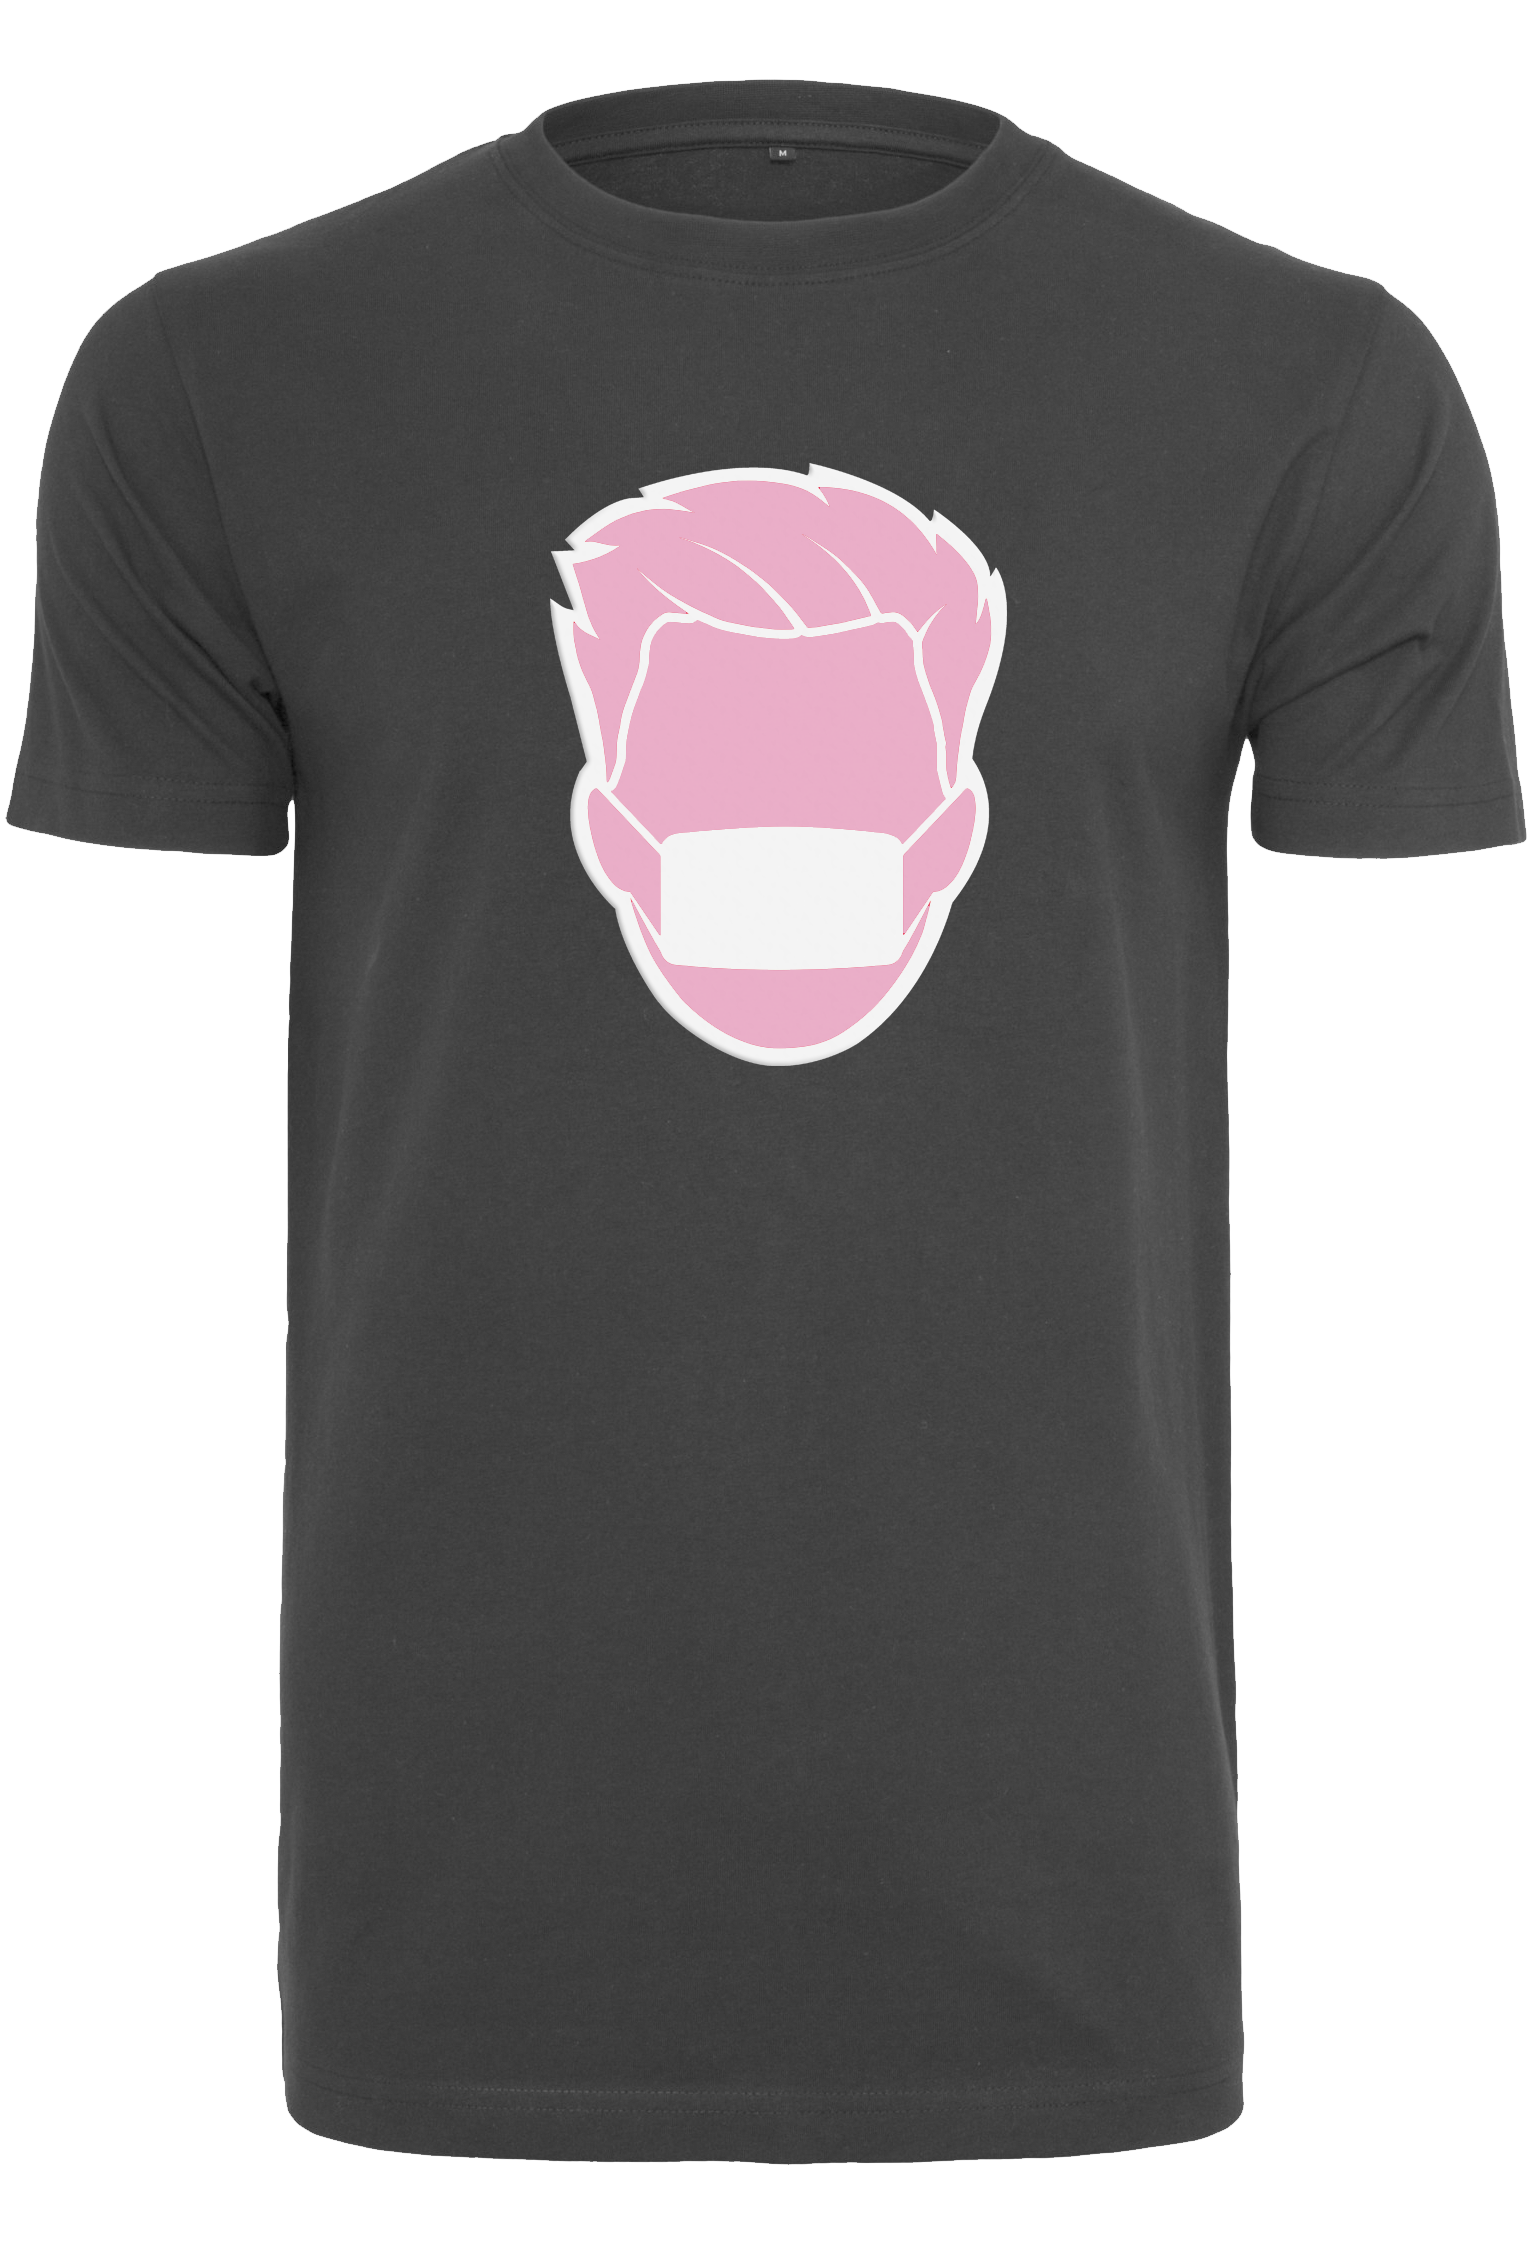 Pinksula black T-Shirt